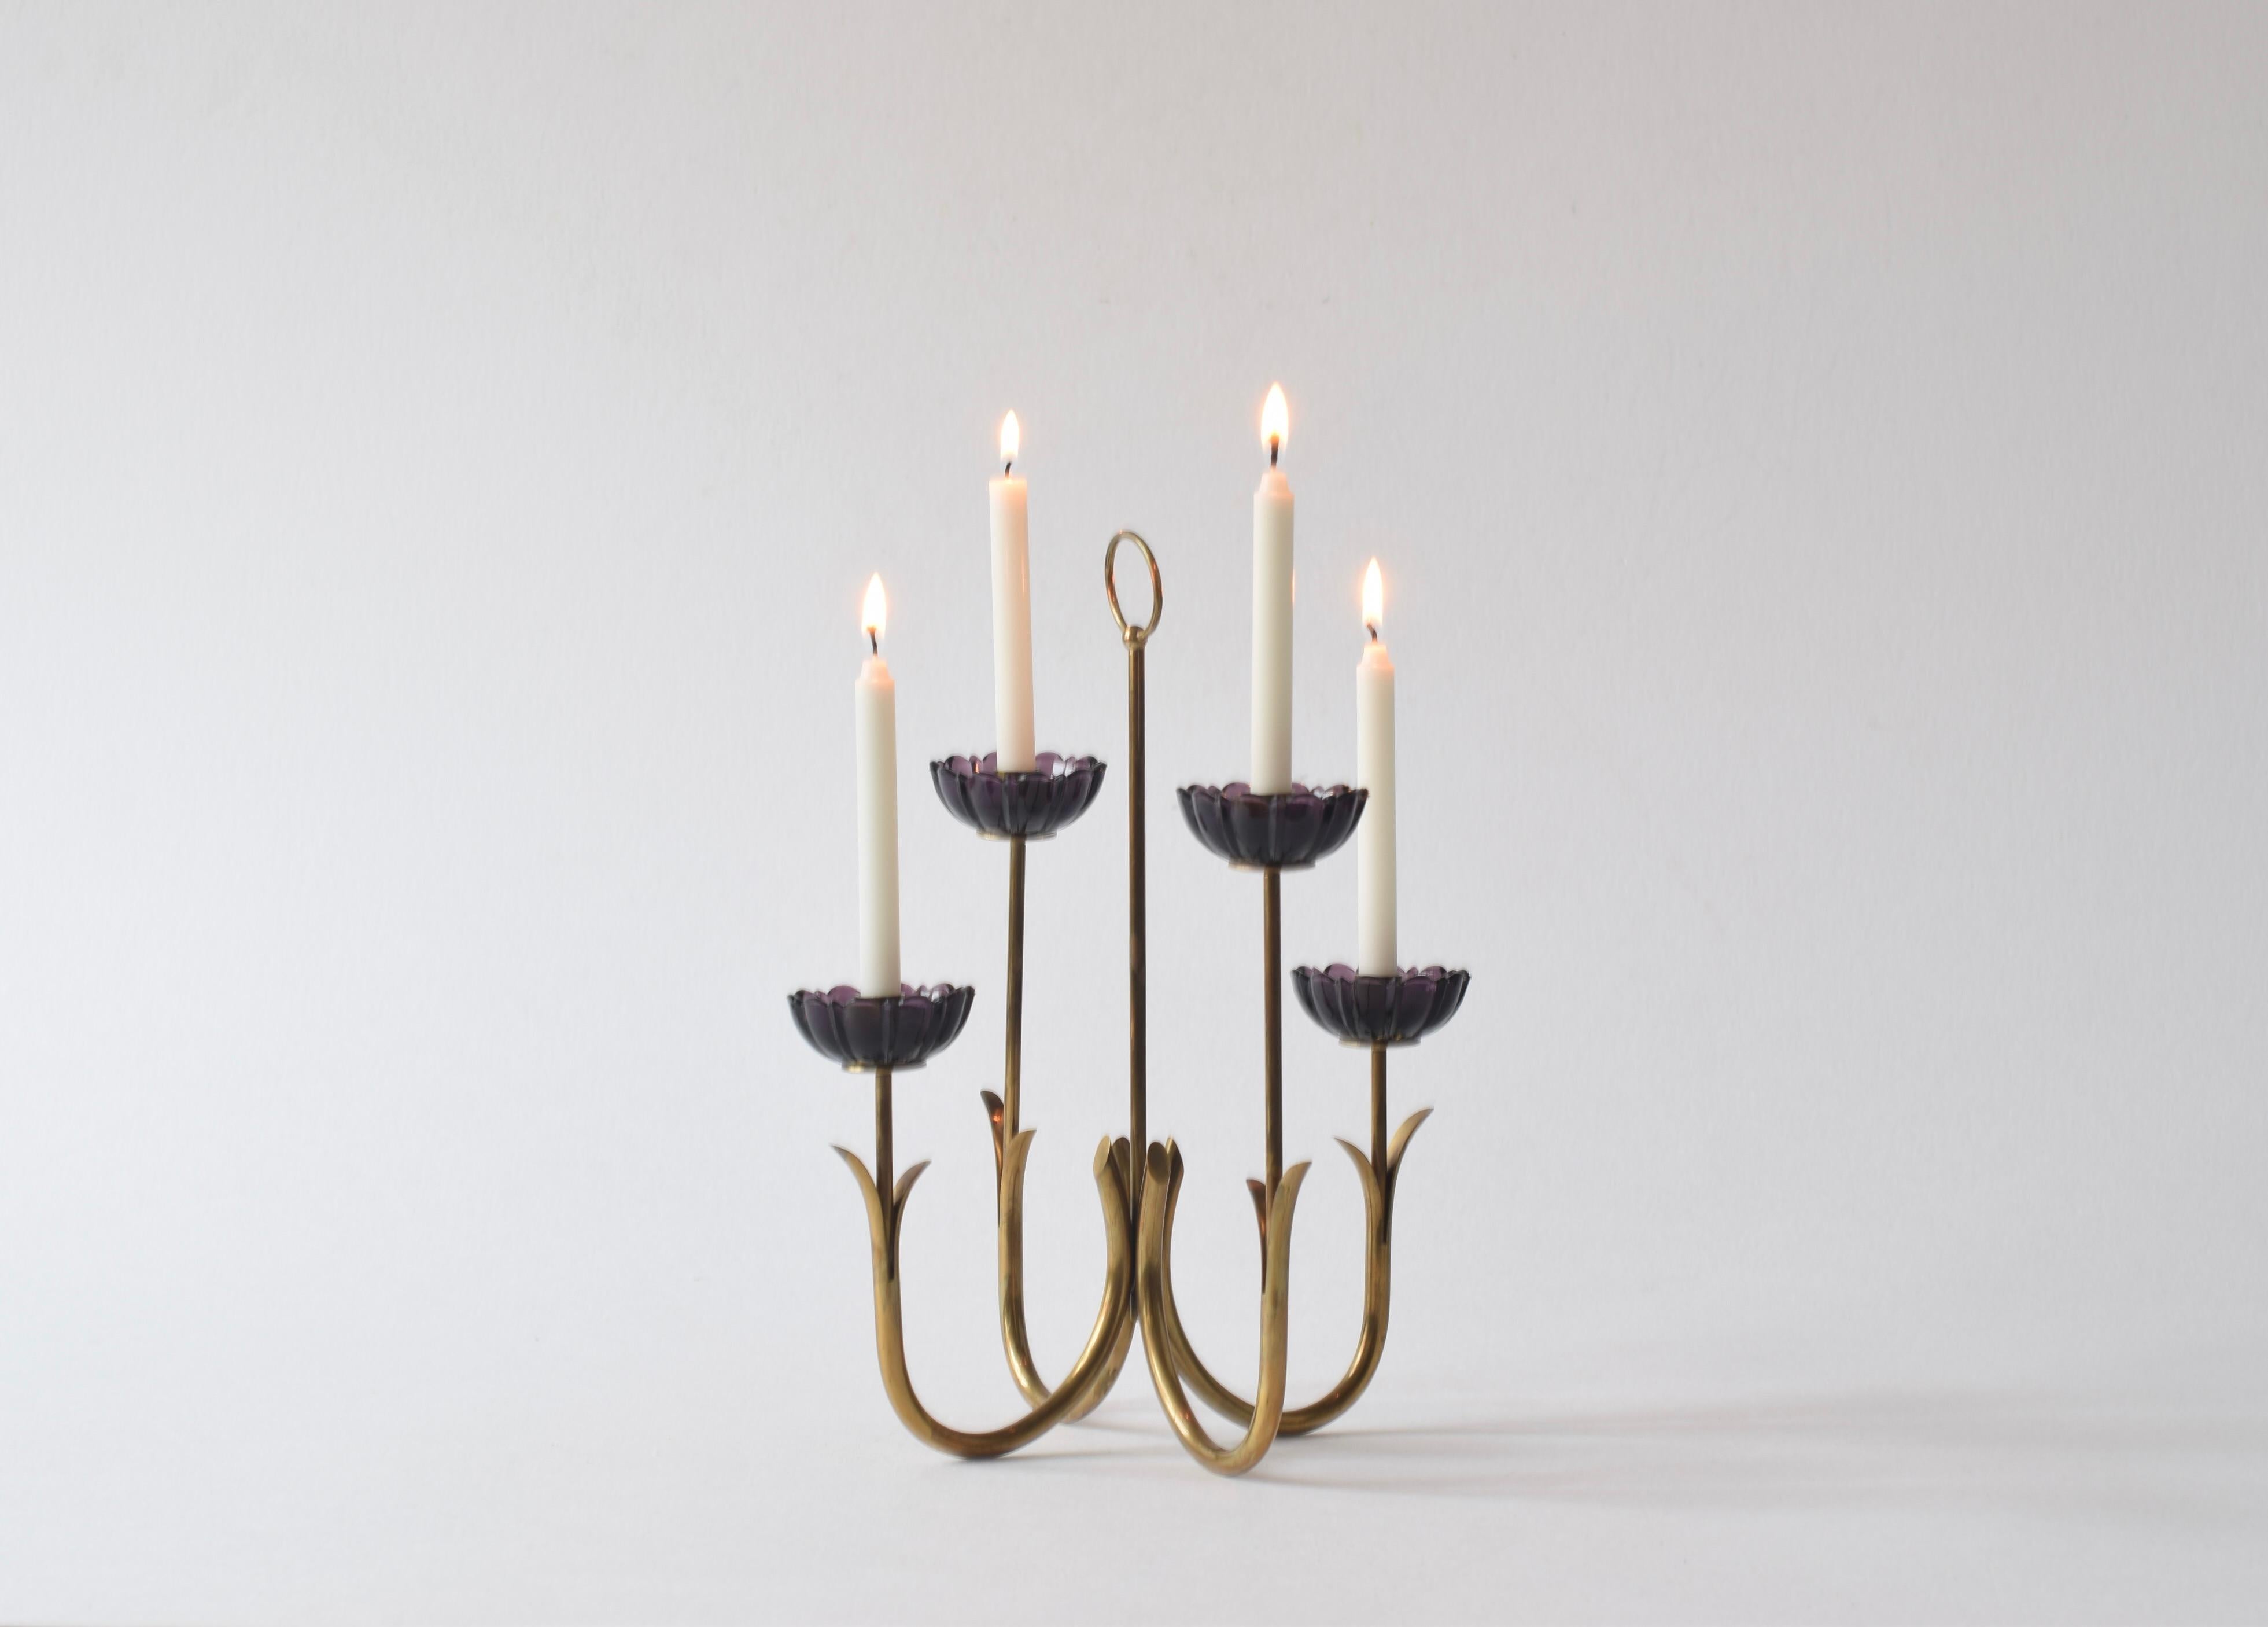 Chandelier à quatre bras de lumière du designer suédois Gunnar Ander (1908-1976) pour Ystad-Metall, Suède. Fabriqué vers les années 1960.

Le candélabre est en laiton et a la forme de quatre fleurs stylisées avec des fleurs en verre violet.  

Il